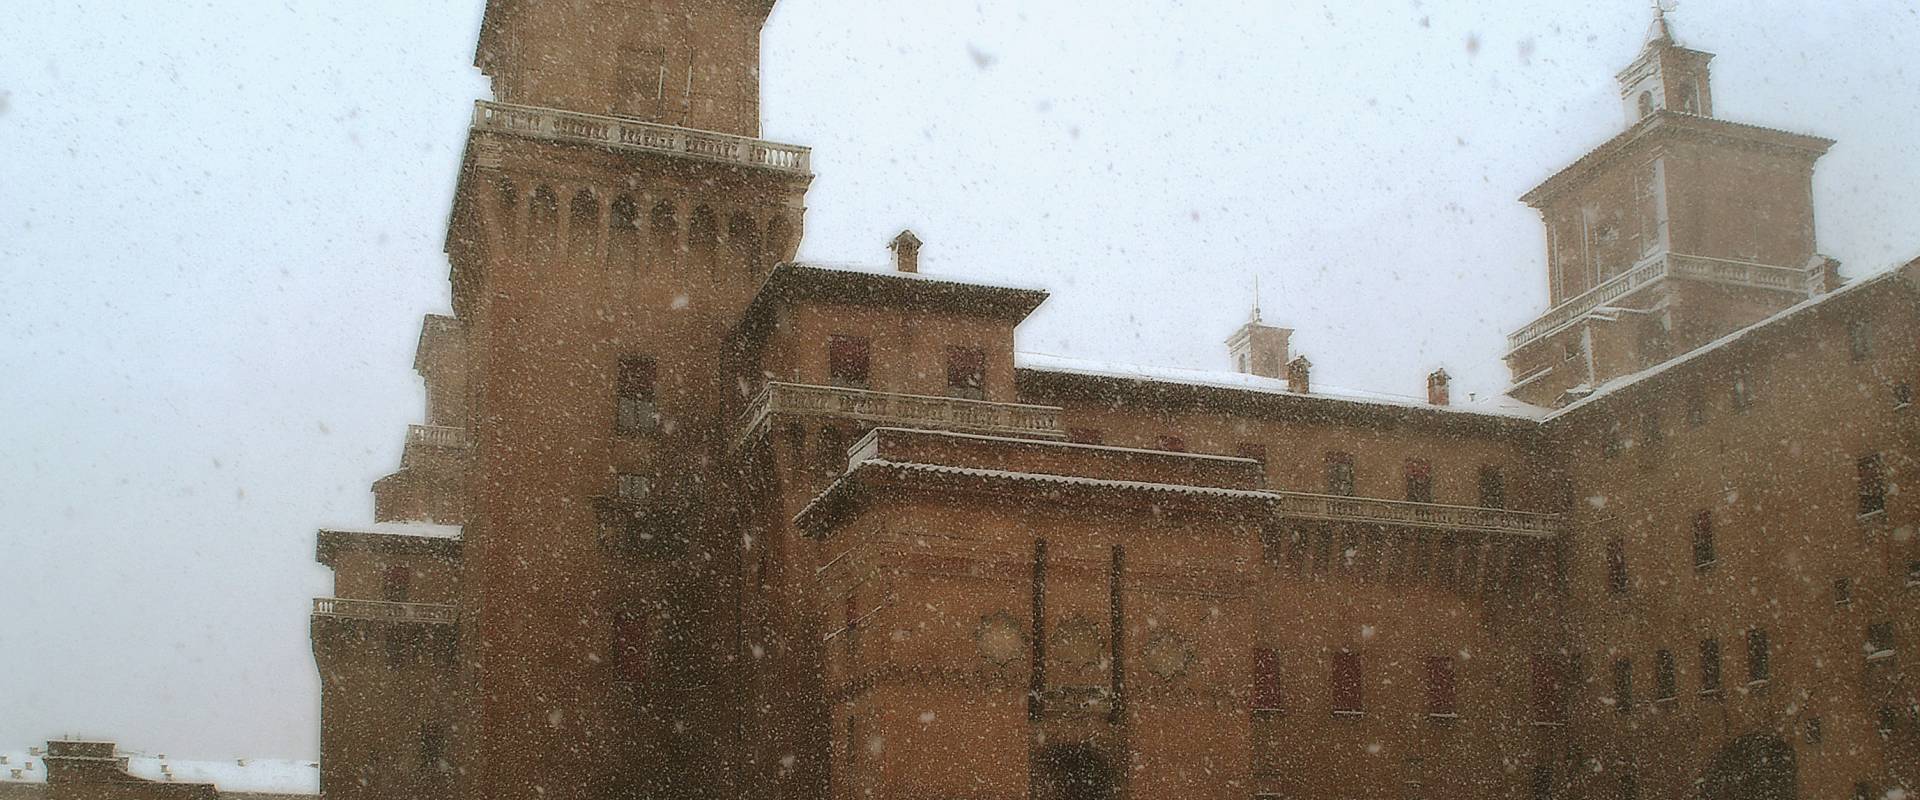 Castello Estense con la neve foto di baraldi